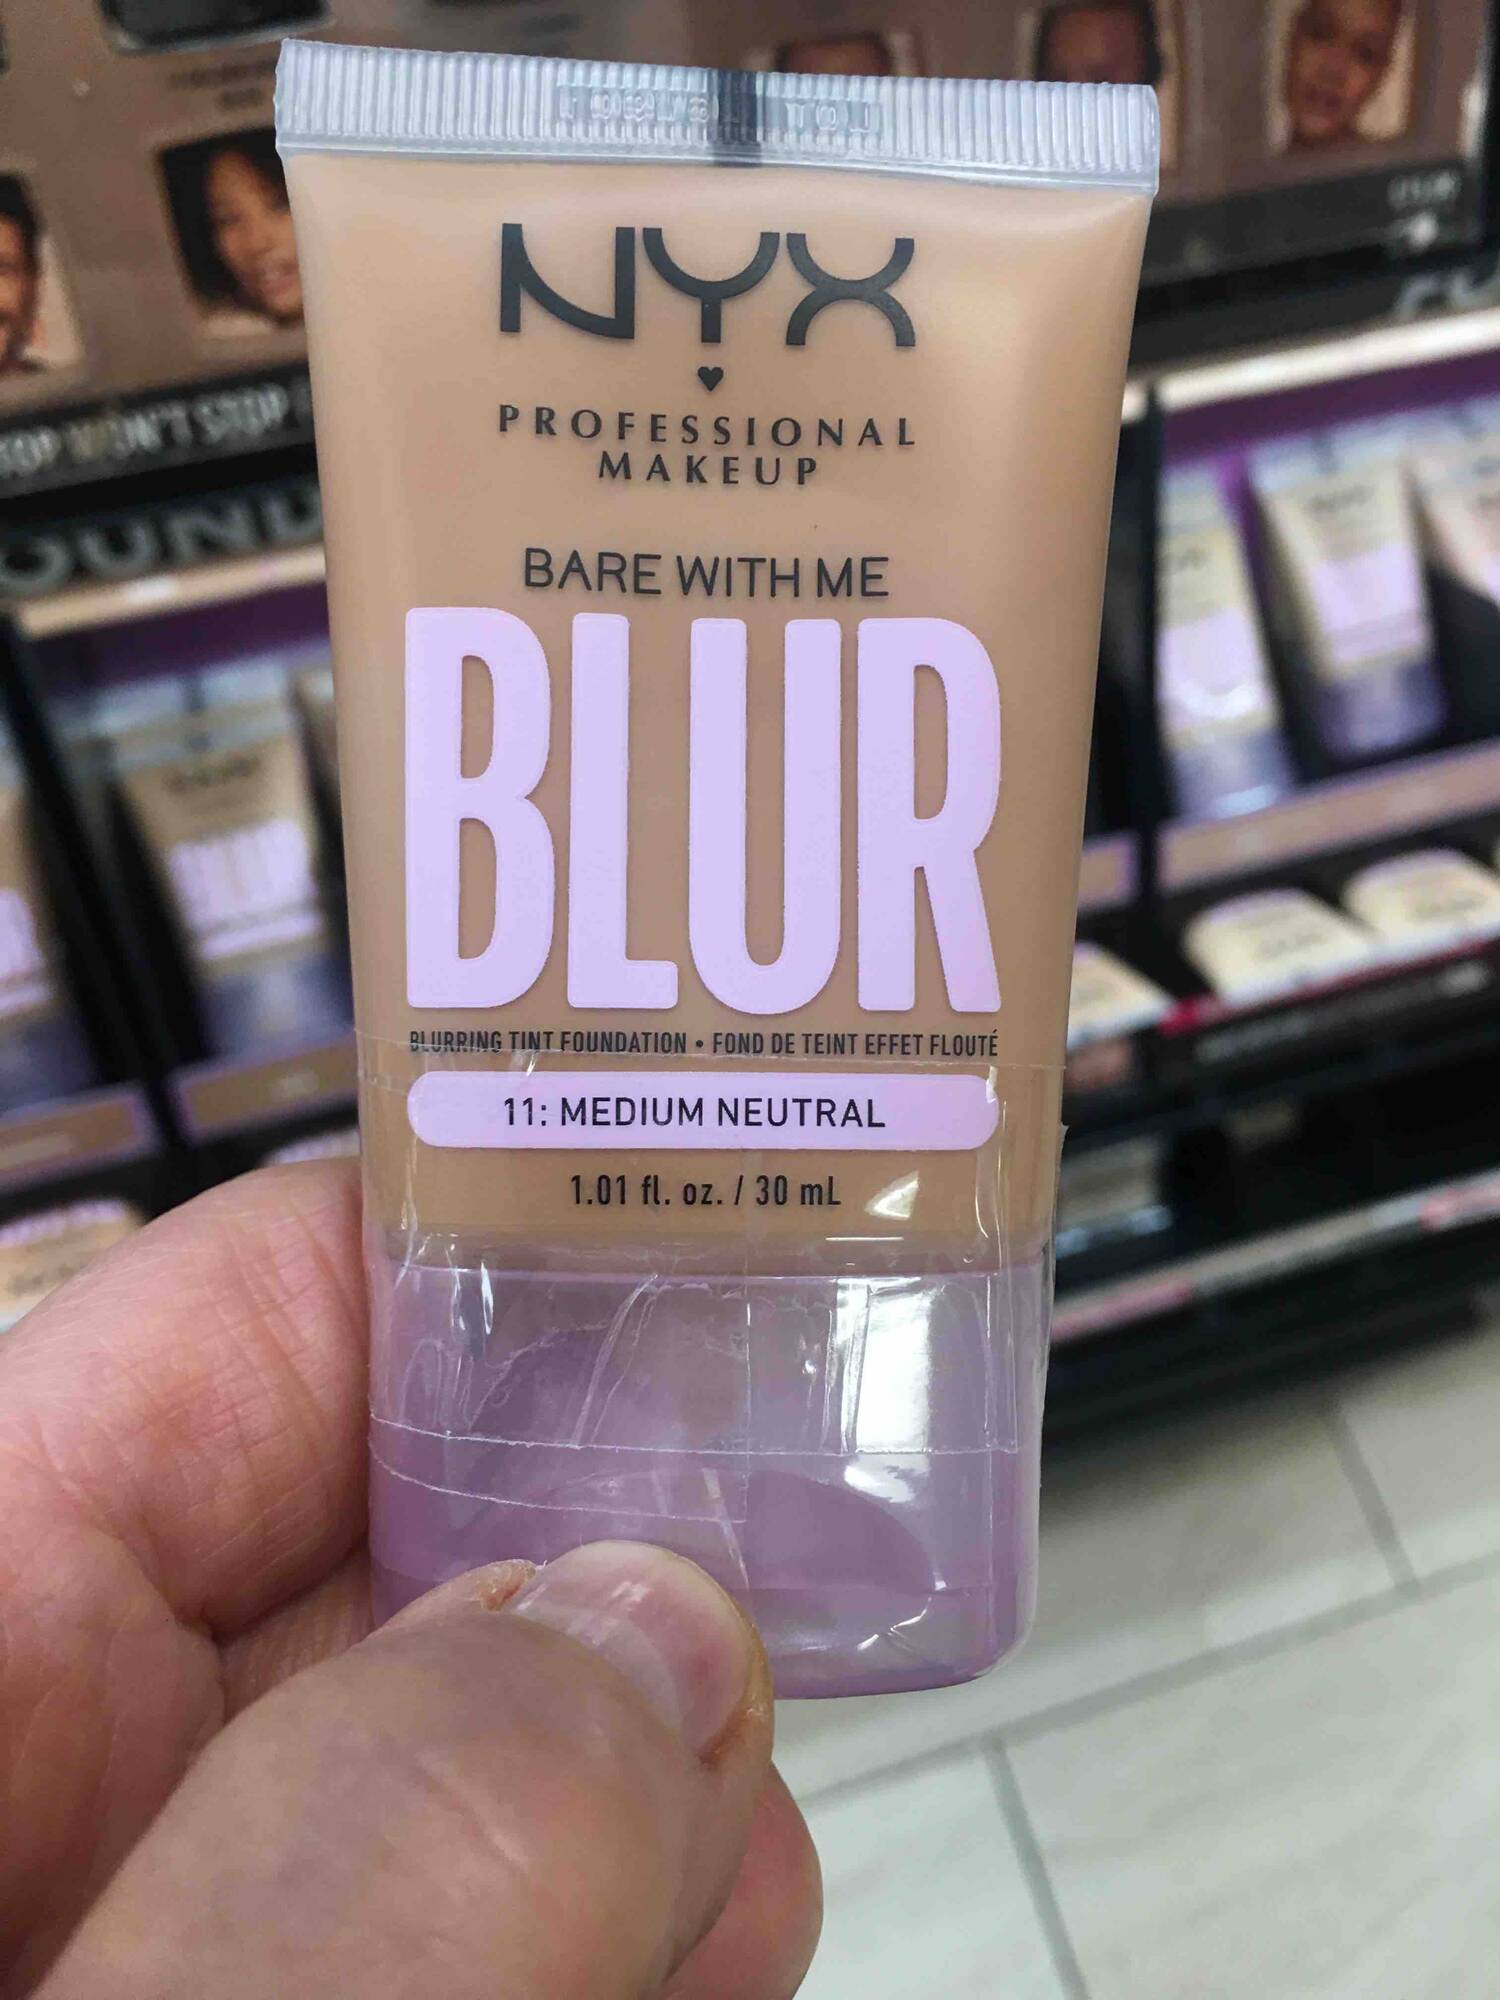 NYX PROFESSIONAL MAKEUP - Bare with me blur - Fond de teint effet flouté